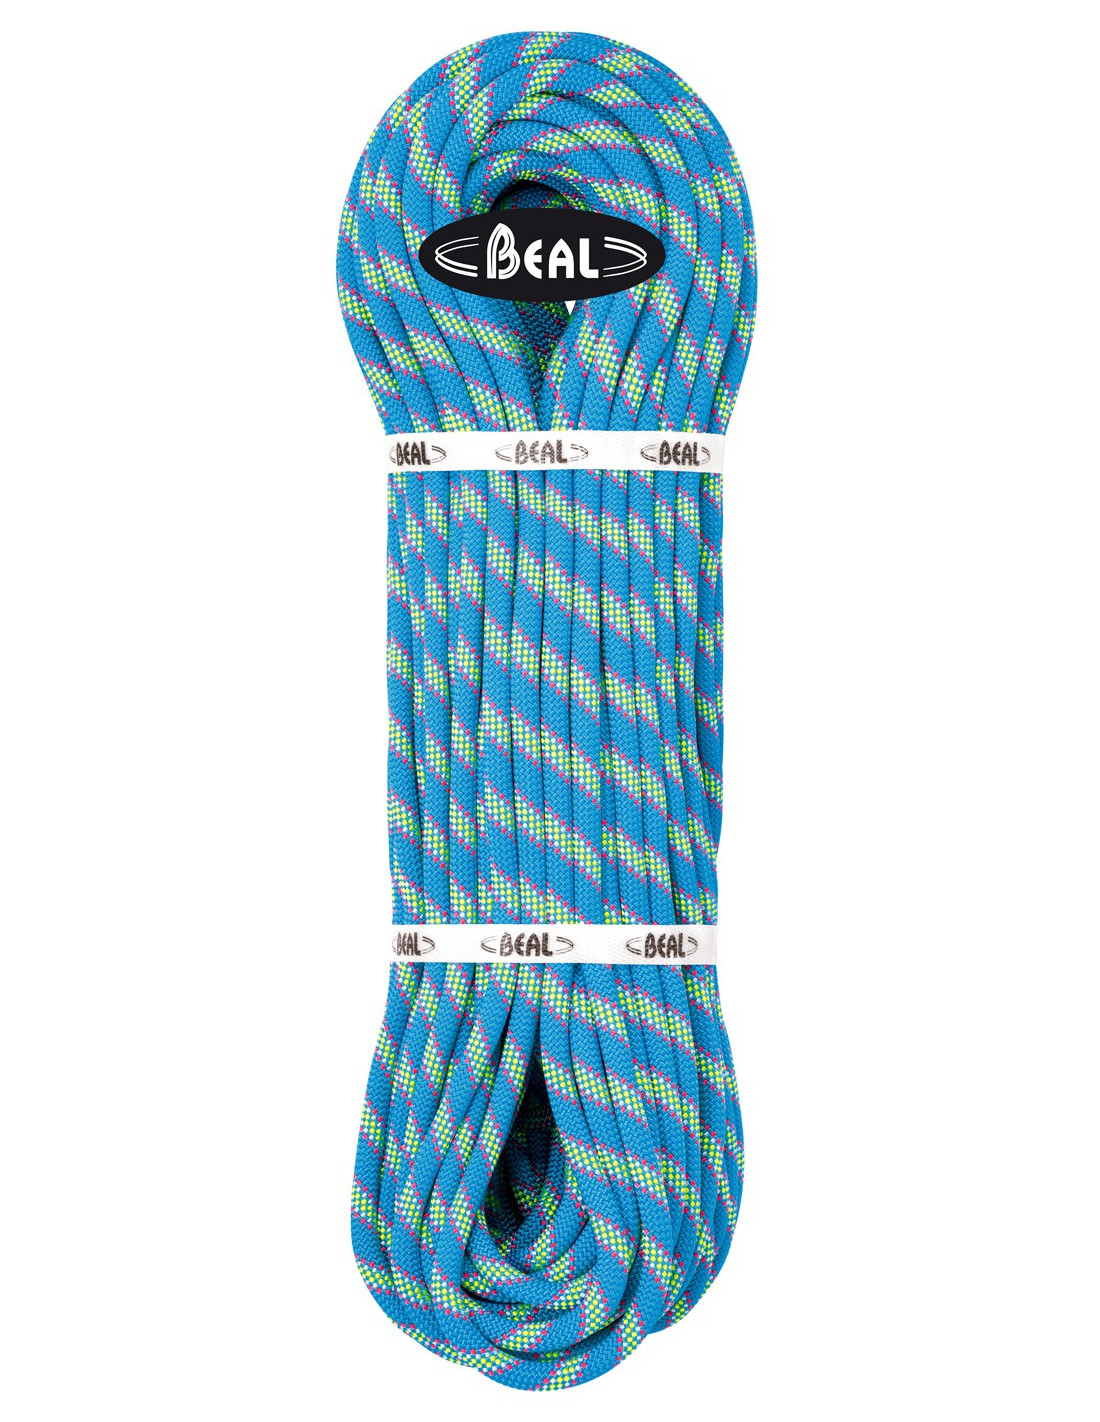 Beal Kletterseil 9,5 Zenith, blue, 60 m Seildurchmesser - 9.1 - 9.5 mm, Seilvariante - Einfachseil, Seilfarbe - Blau, Seillänge - 60 m, von Beal